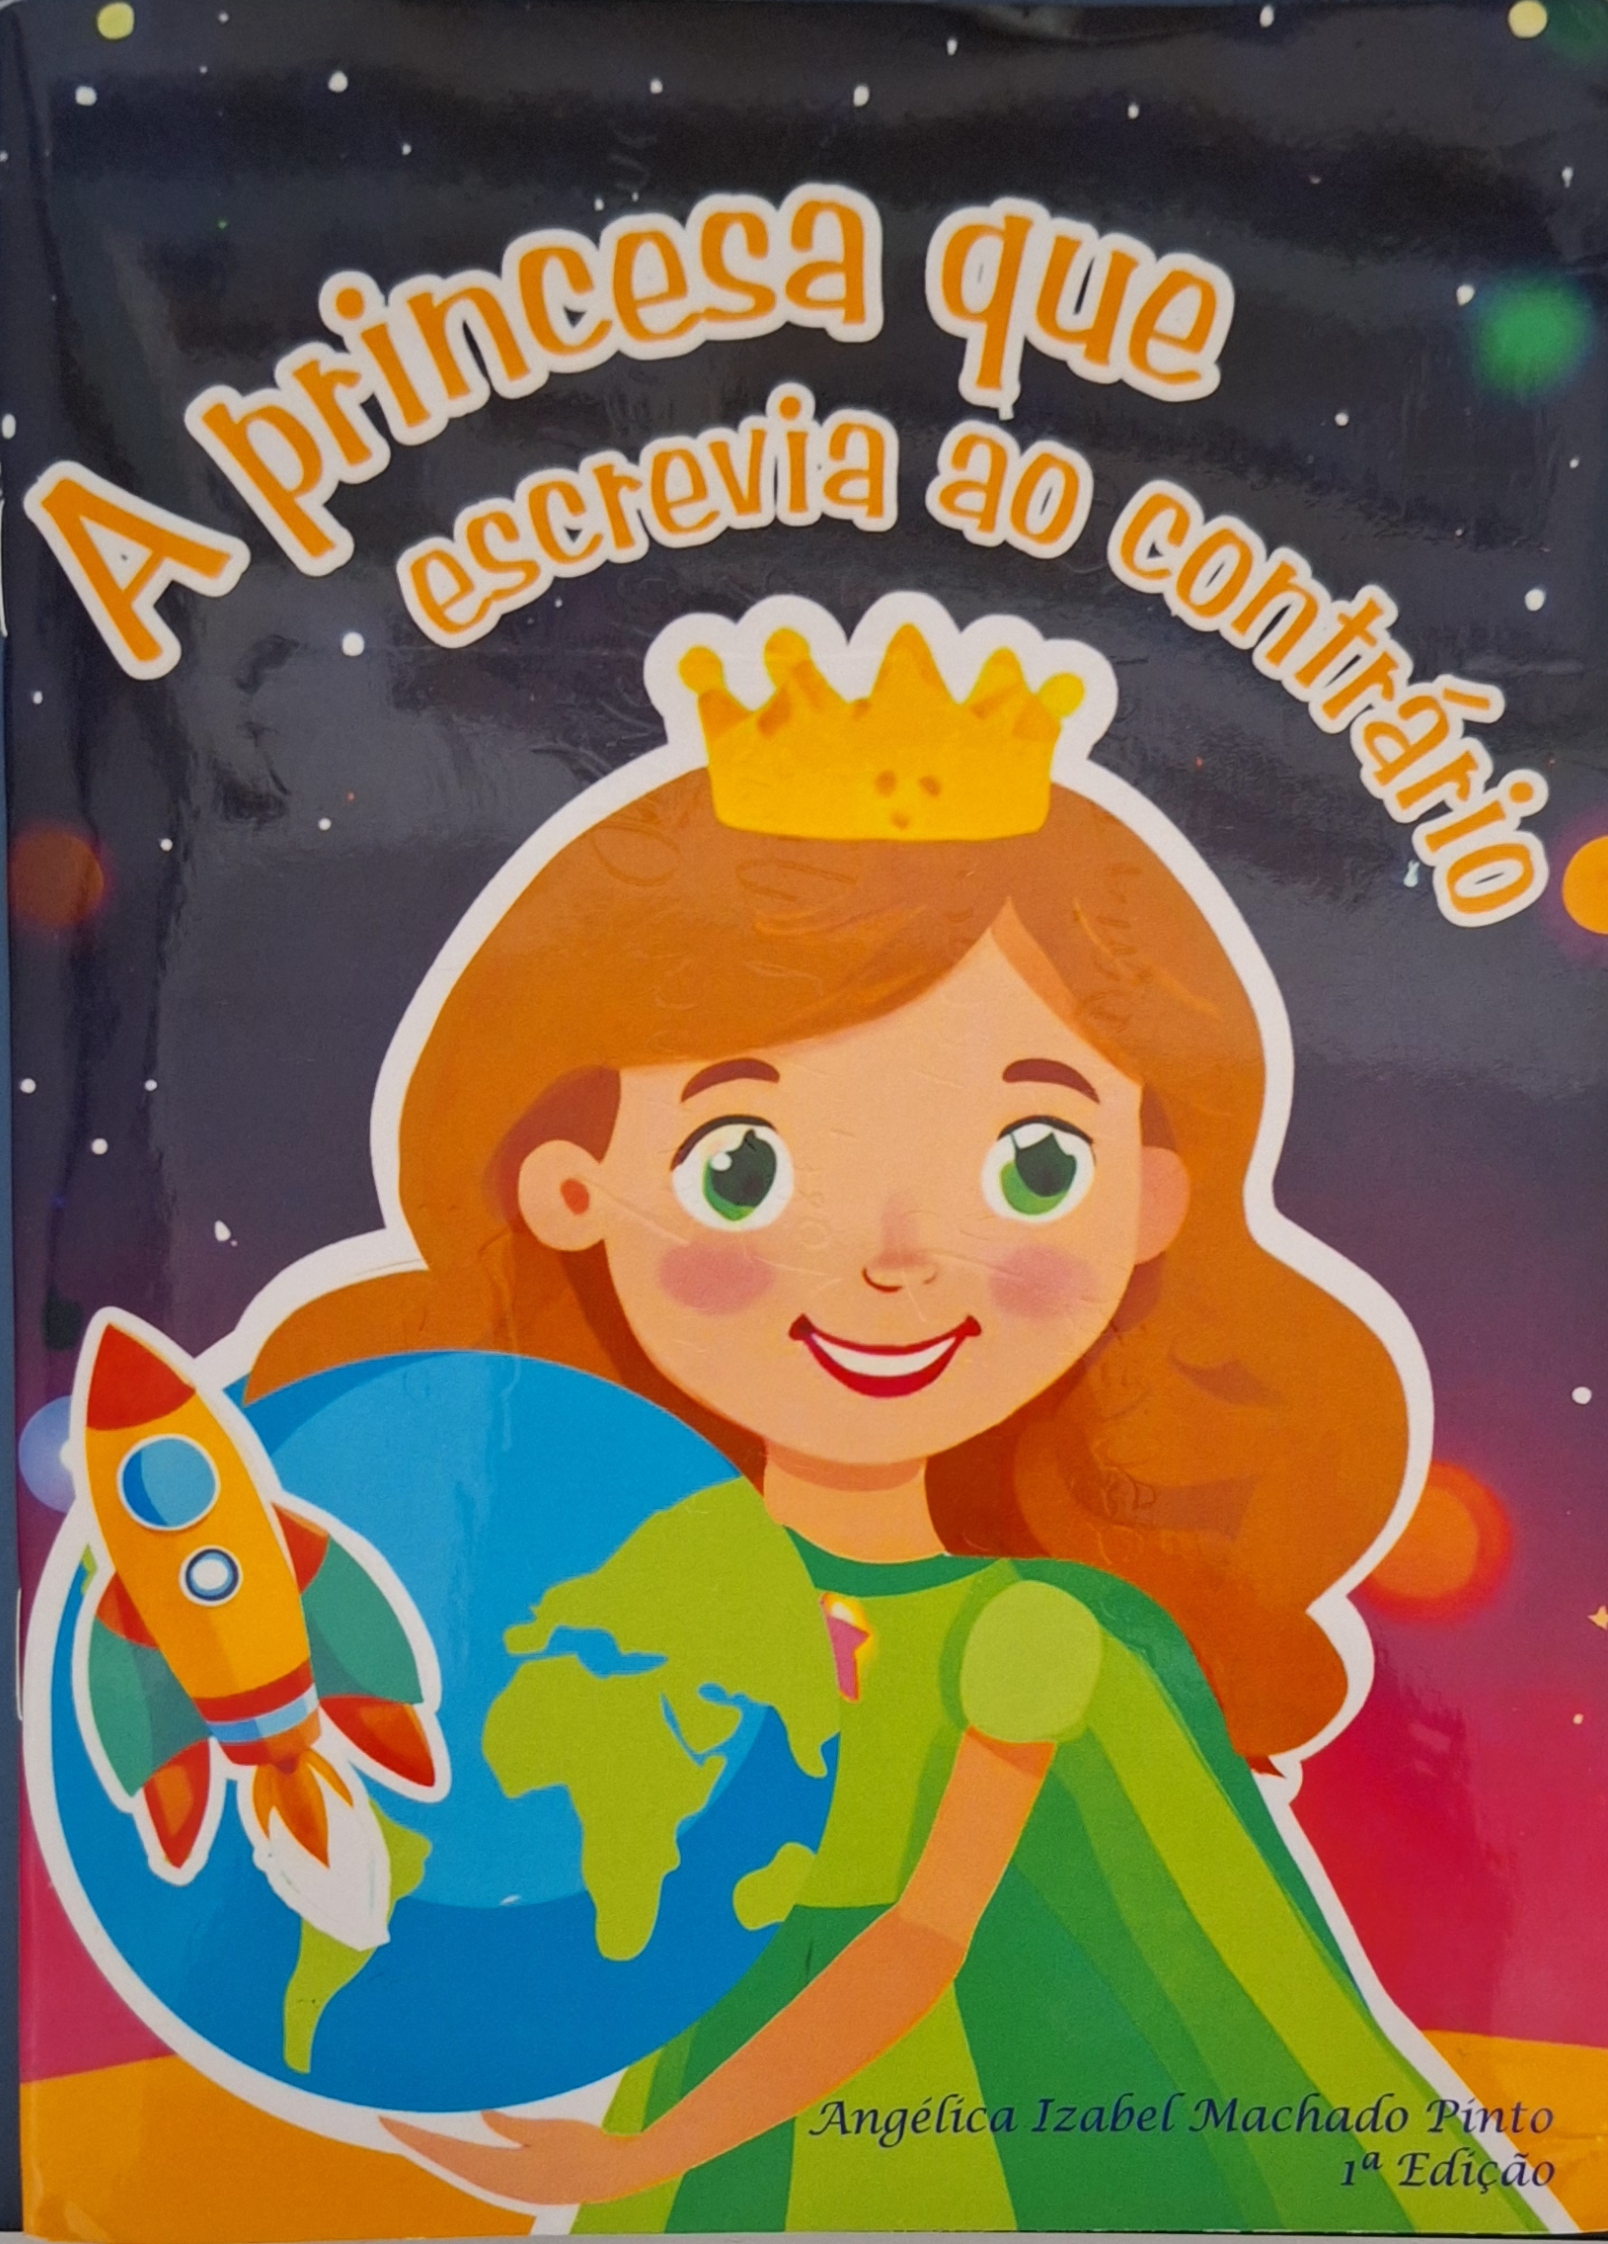 Capa do livro A princesa que escrevia ao contrário,  de Angélica Izabel Machado Pinto, pela Editora Uiclap